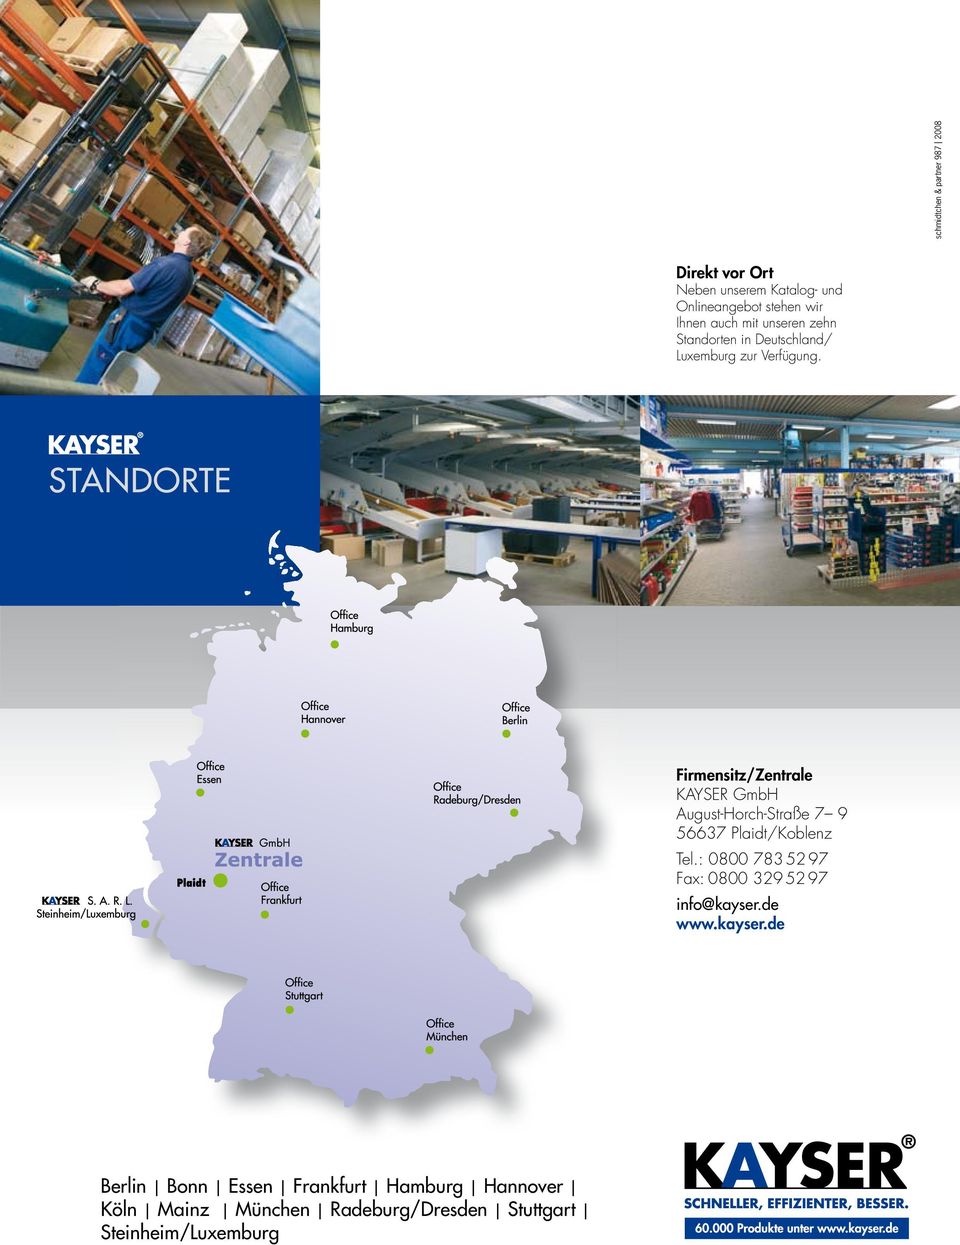 STANDORTE Firmensitz/Zentrale KAYSER GmbH August-Horch-Straße 7 9 56637 Plaidt/Koblenz Tel.